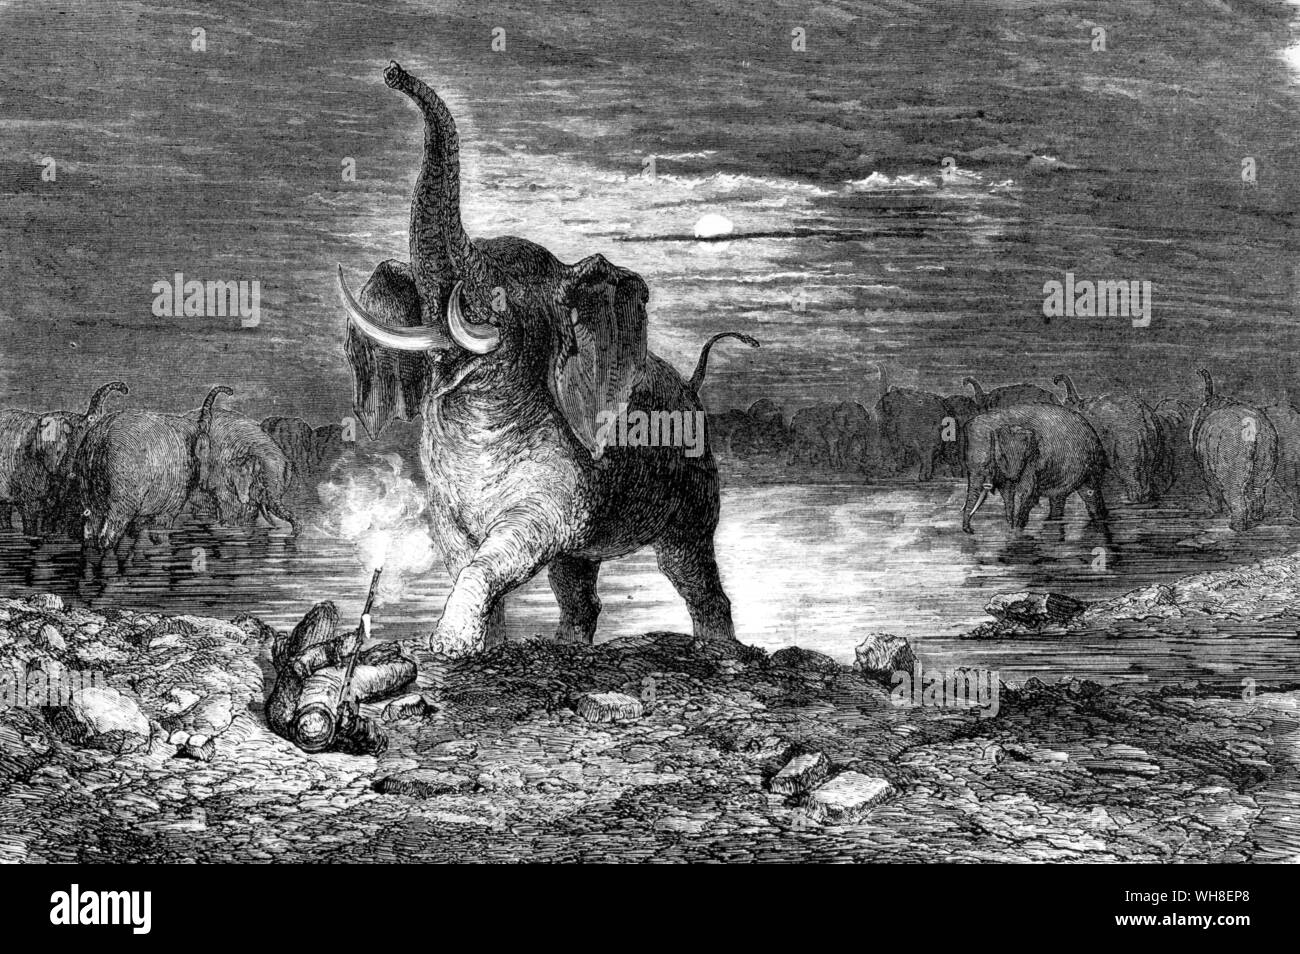 Chasseur d'éléphants ont attaqué par des éléphants venant du monde entier, 1868. L'aventure africaine, une histoire de l'Afrique des explorateurs du par Timothy Severin, page 20. Banque D'Images